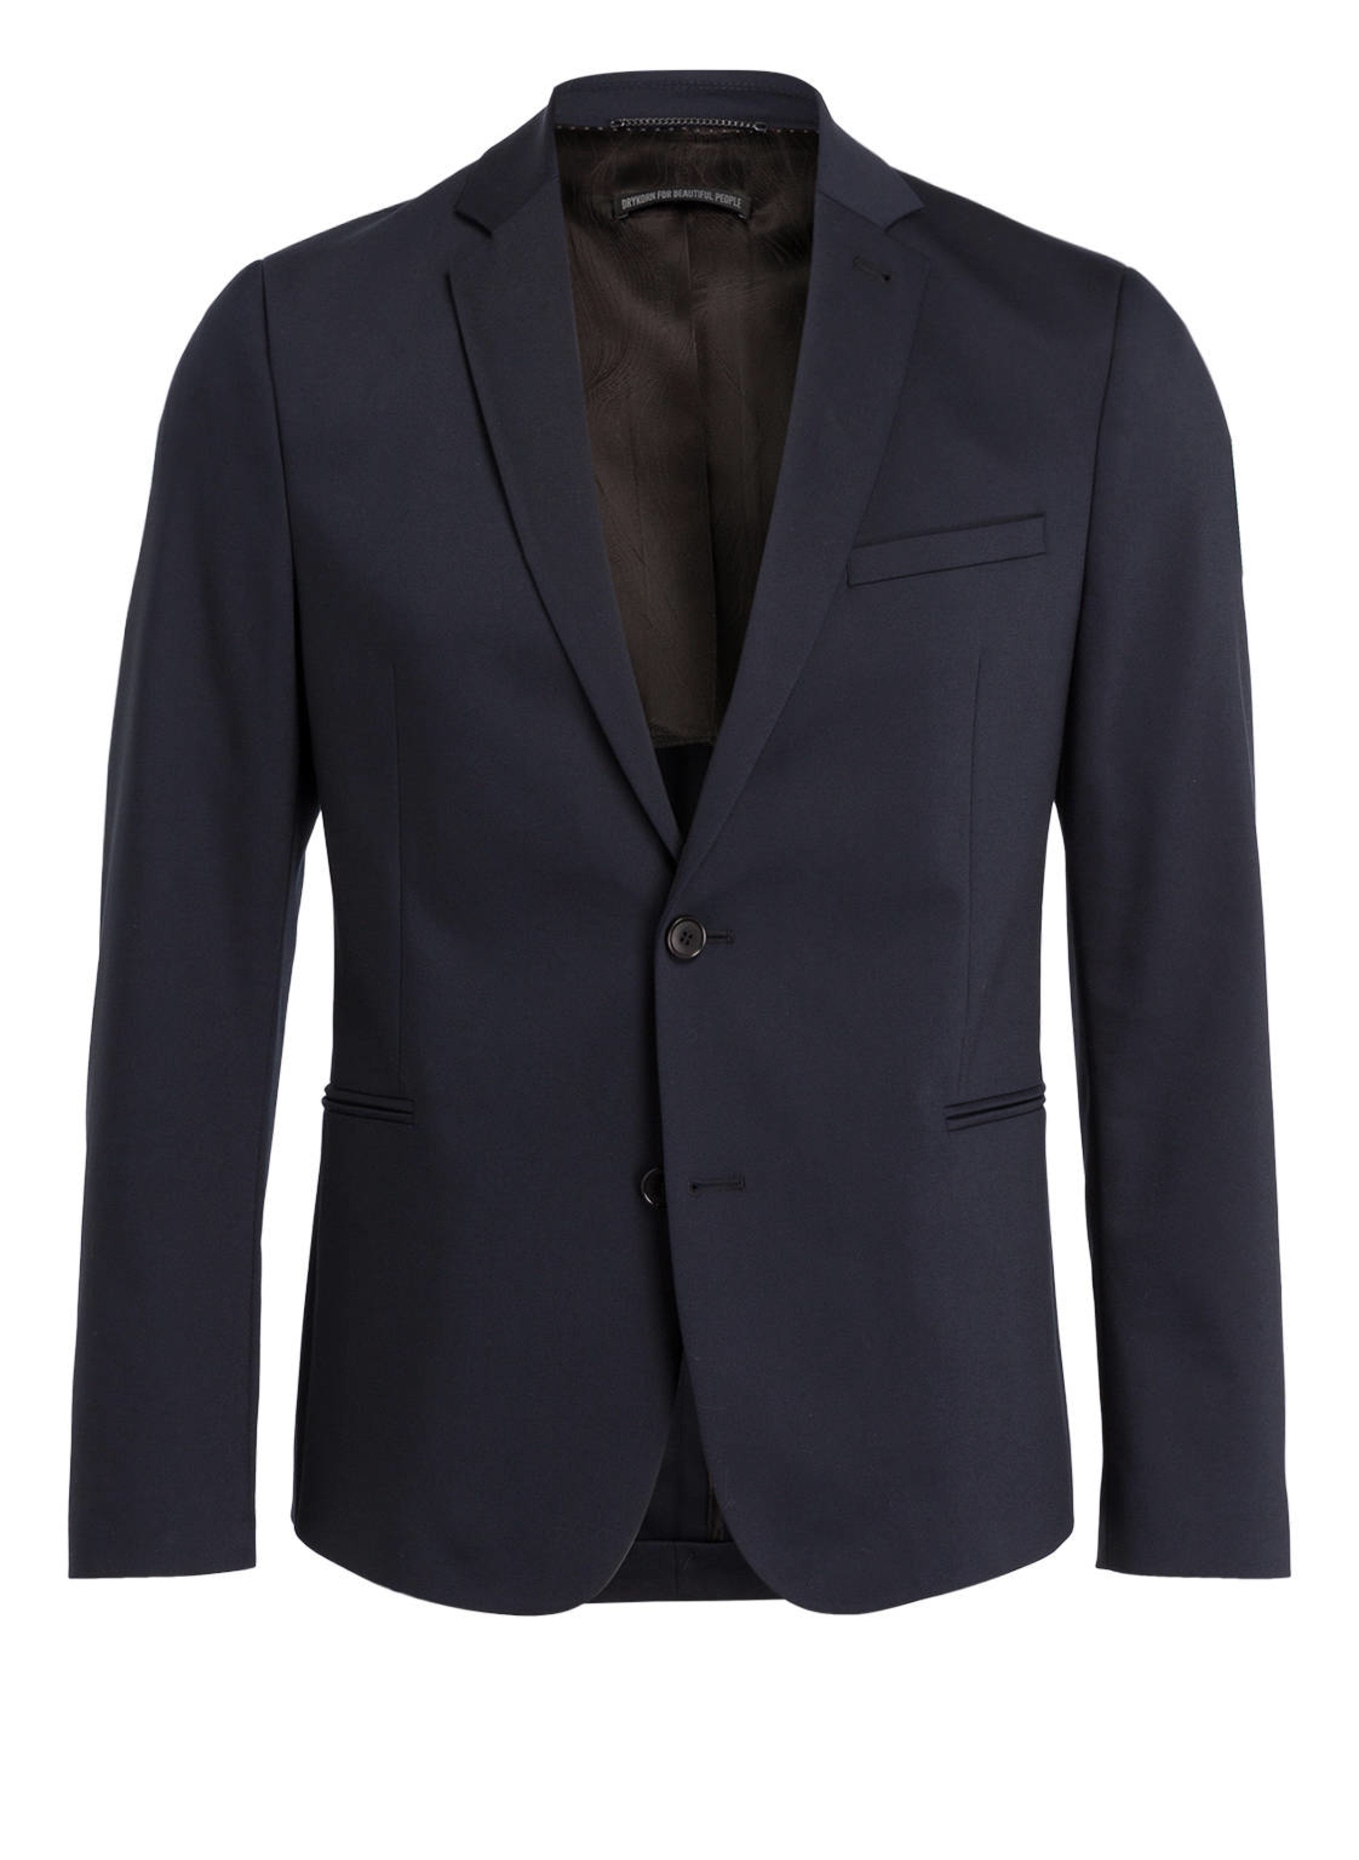 DRYKORN Jacket HURLEY slim fit, Color: 31 (Image 1)